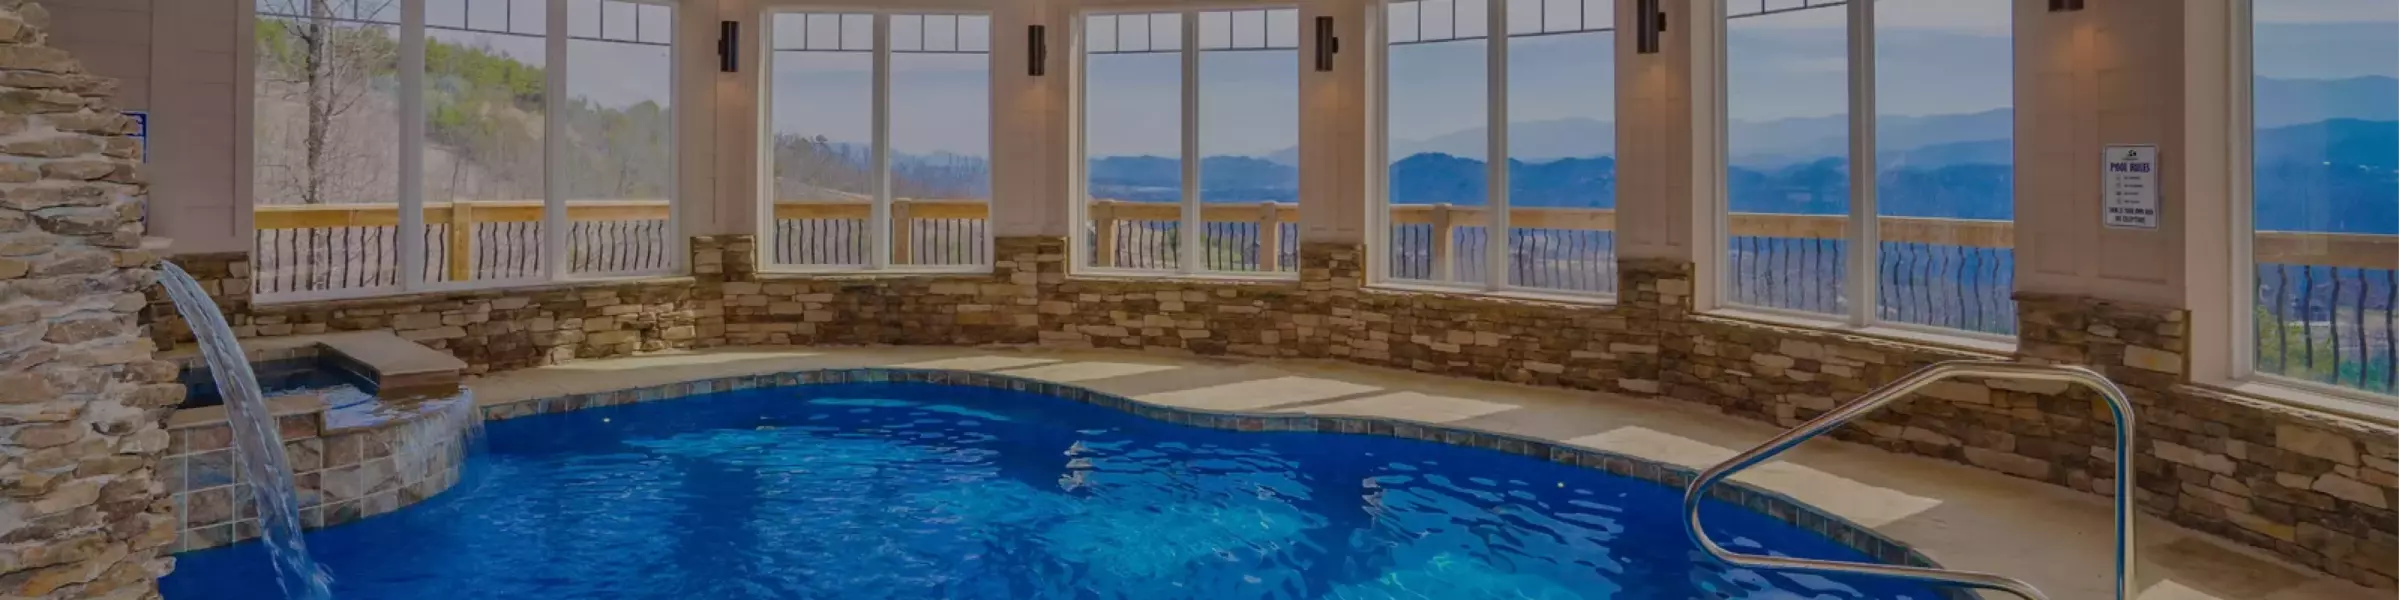 indoor-pool-banner